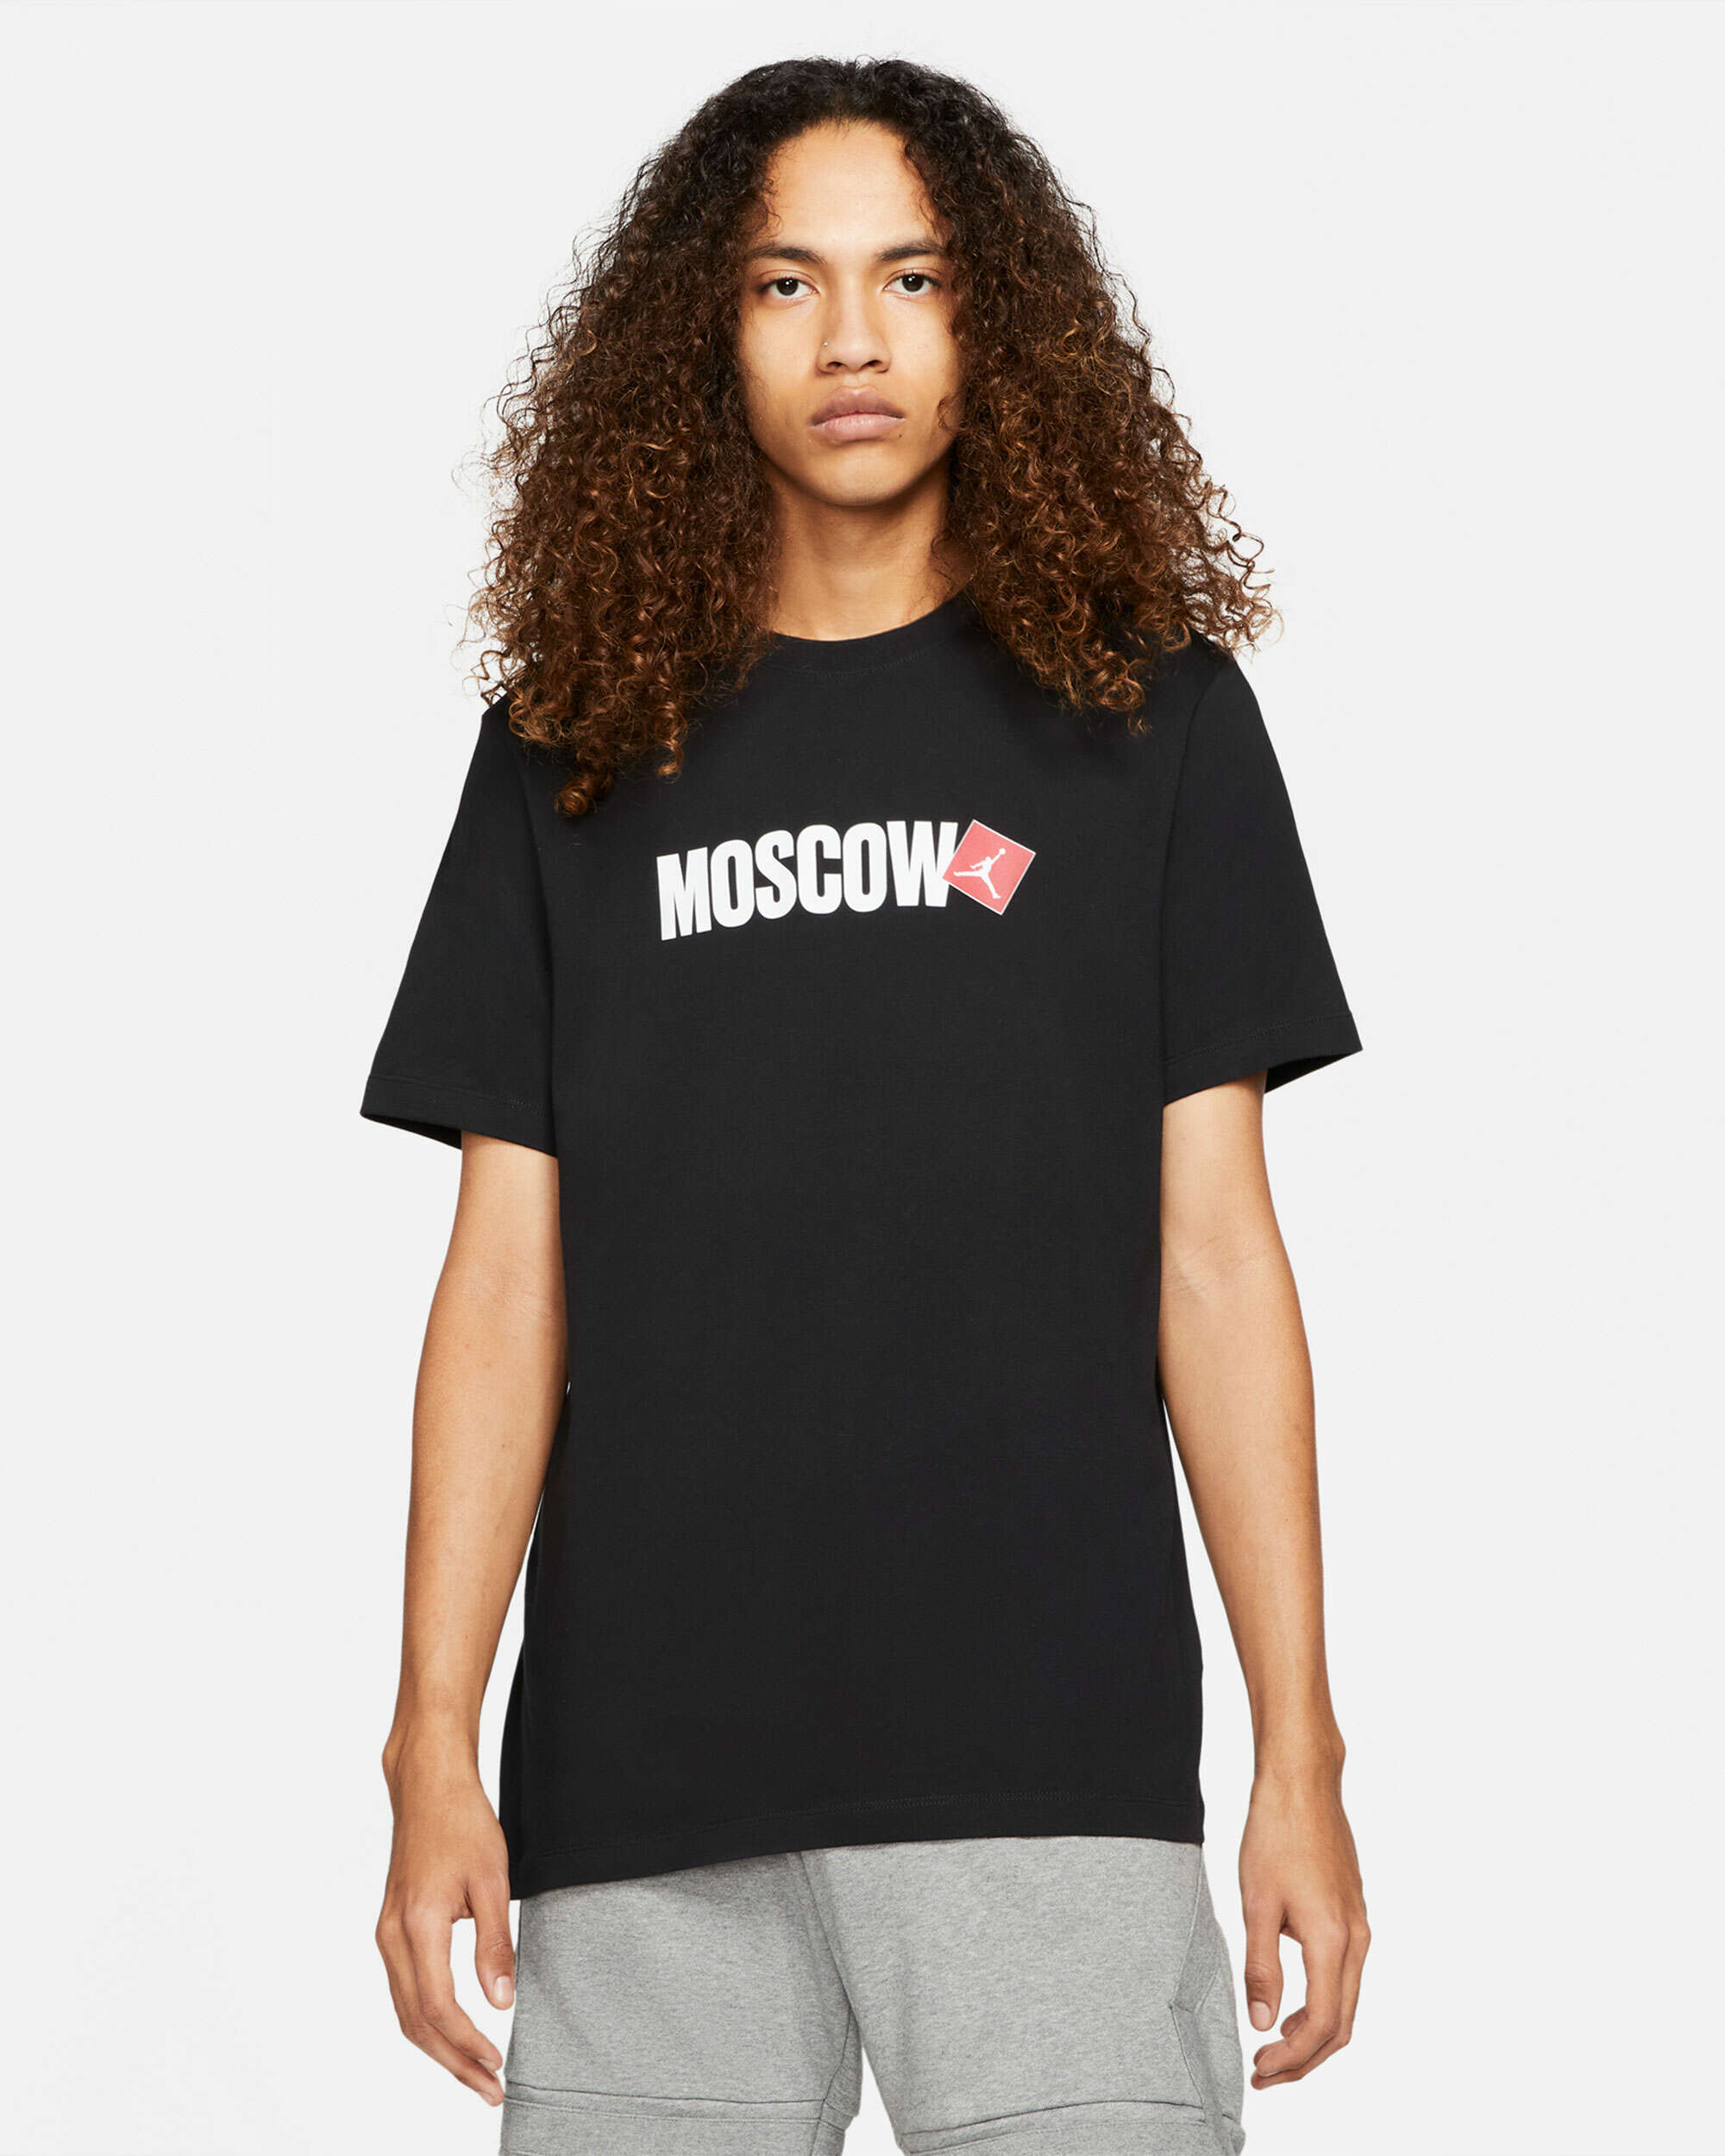 Diálogo Sofocar escapar Jordan Moscow City Men's T-Shirt Negro DD8038-010| Comprar Online en  FOOTDISTRICT